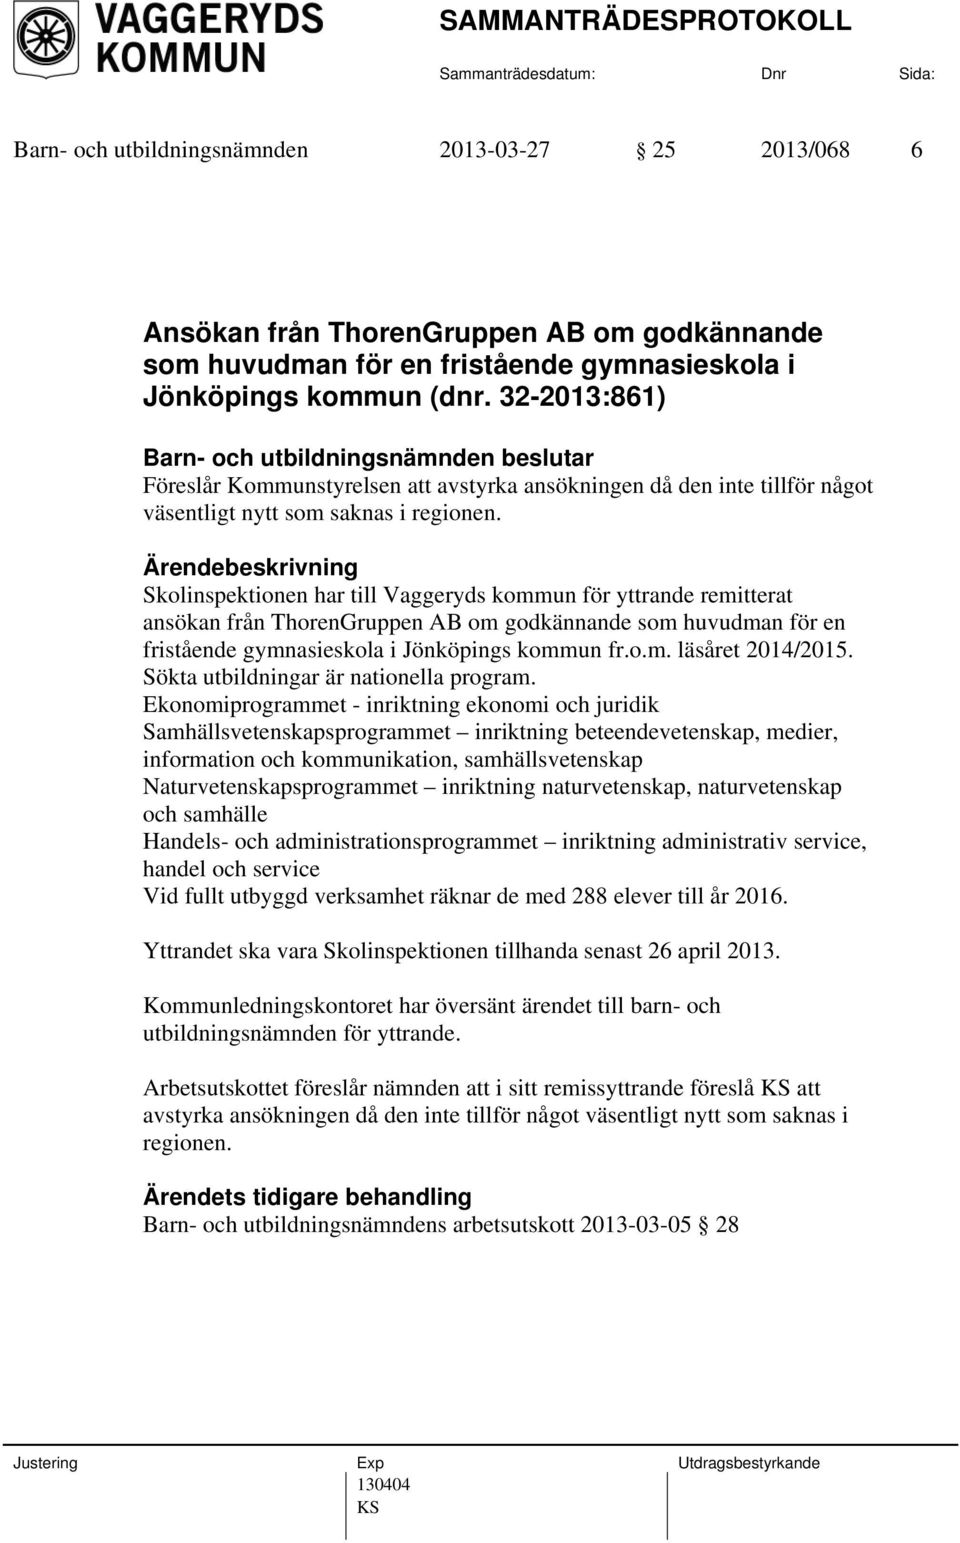 Skolinspektionen har till Vaggeryds kommun för yttrande remitterat ansökan från ThorenGruppen AB om godkännande som huvudman för en fristående gymnasieskola i Jönköpings kommun fr.o.m. läsåret 2014/2015.